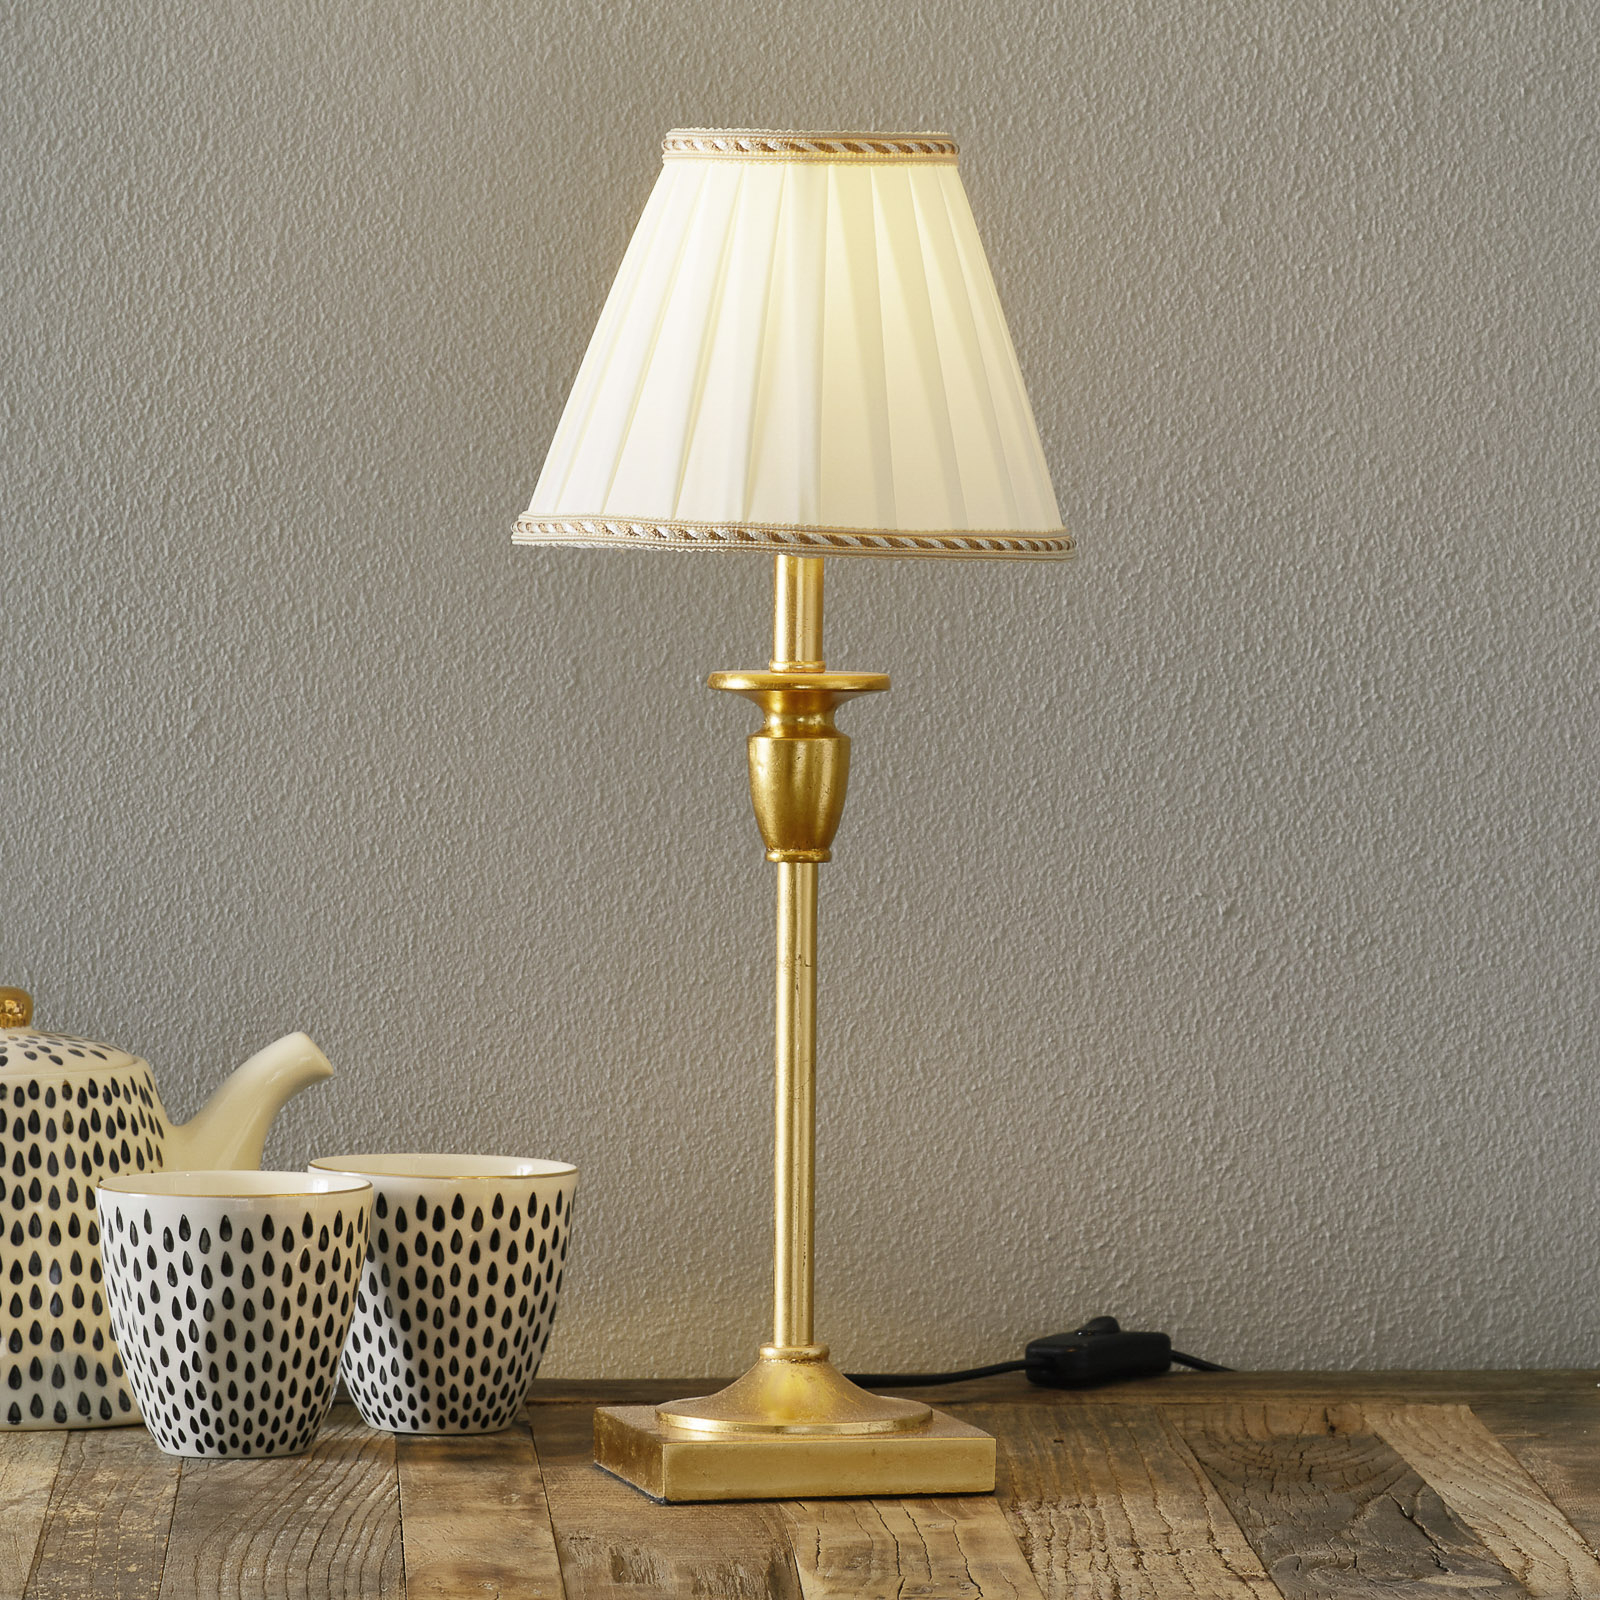 Stolní lampa Donata Ø 17,8 cm